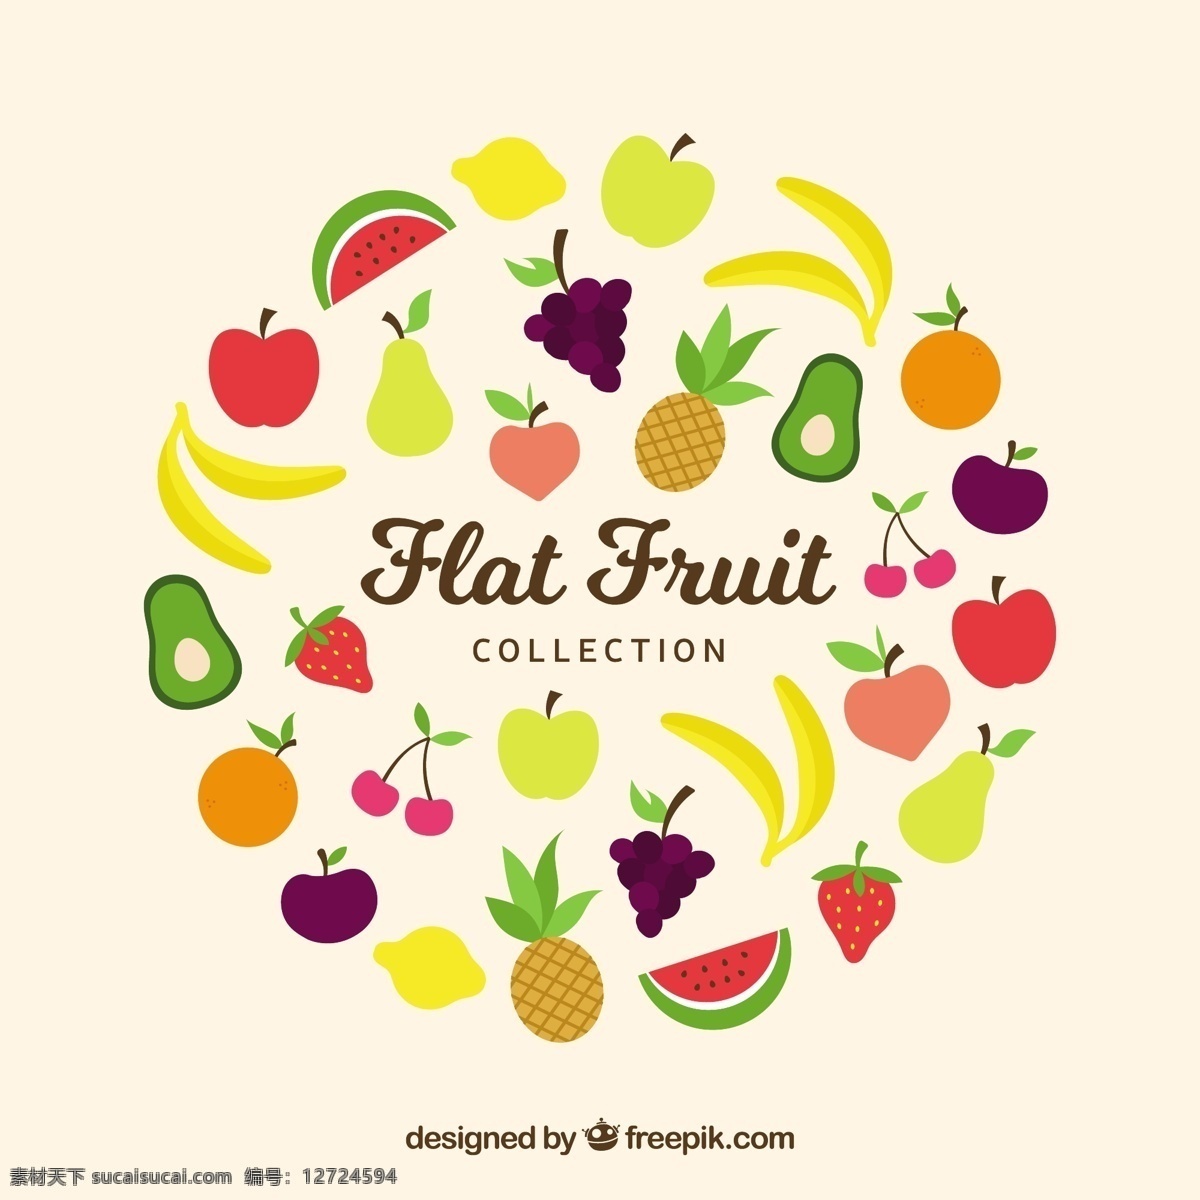 平面设计 中彩 色 水果 采集 食品 夏季 颜色 苹果 平板 天然 香蕉 健康 草莓 菠萝 吃 健康食品 西瓜 葡萄 饮食 营养